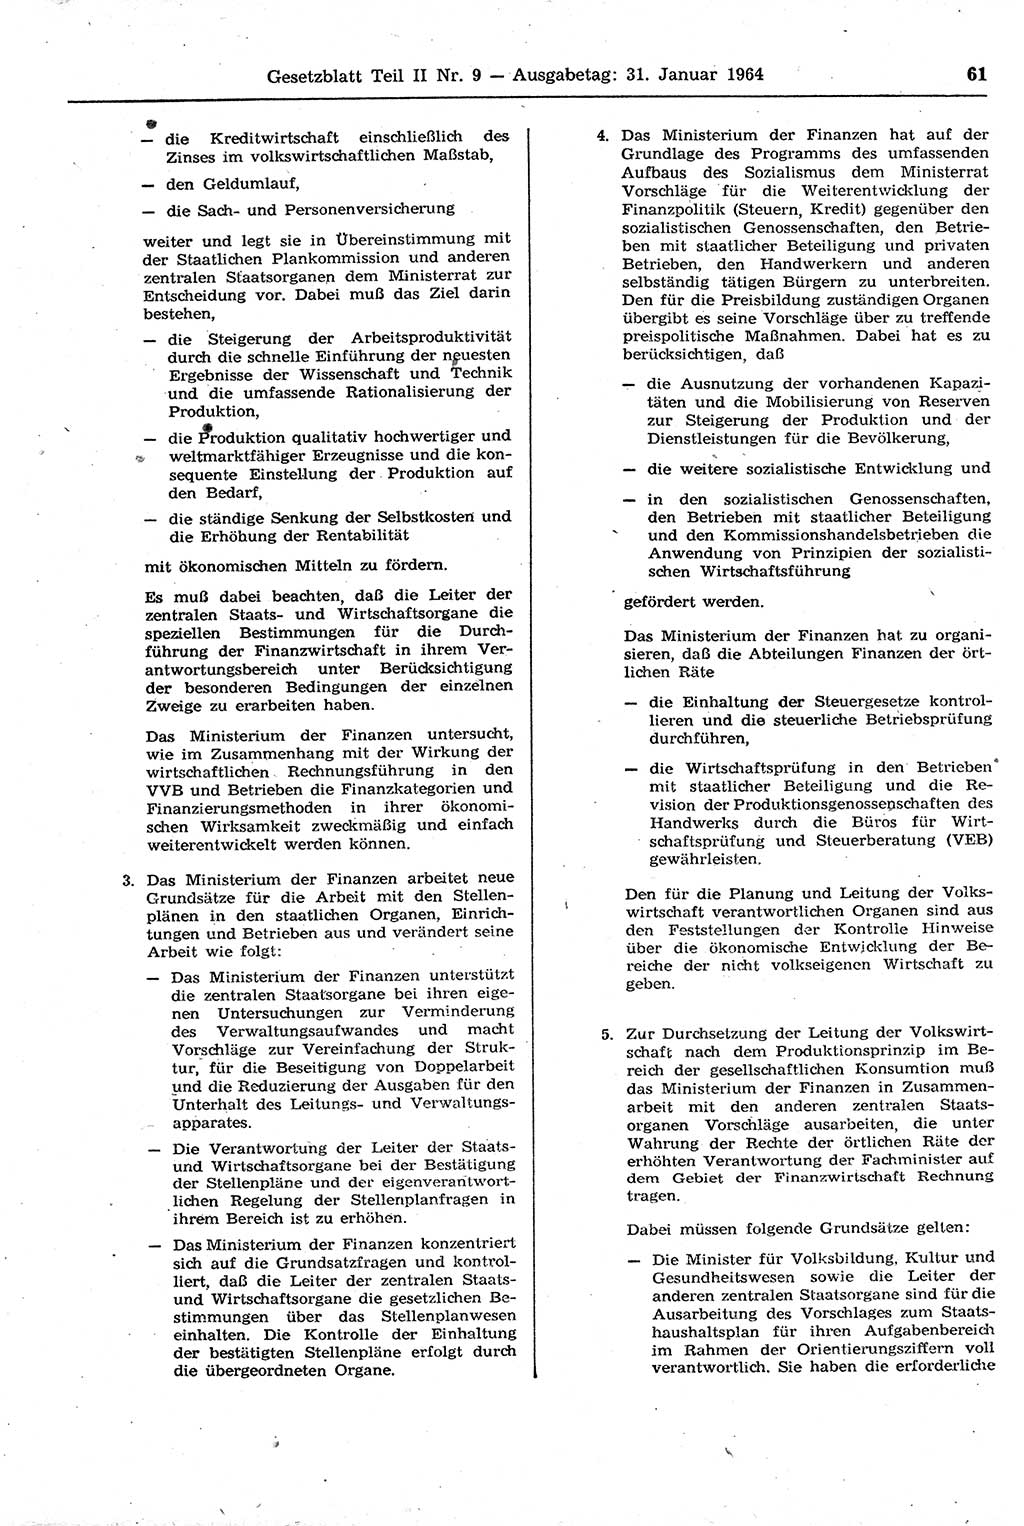 Gesetzblatt (GBl.) der Deutschen Demokratischen Republik (DDR) Teil ⅠⅠ 1964, Seite 61 (GBl. DDR ⅠⅠ 1964, S. 61)